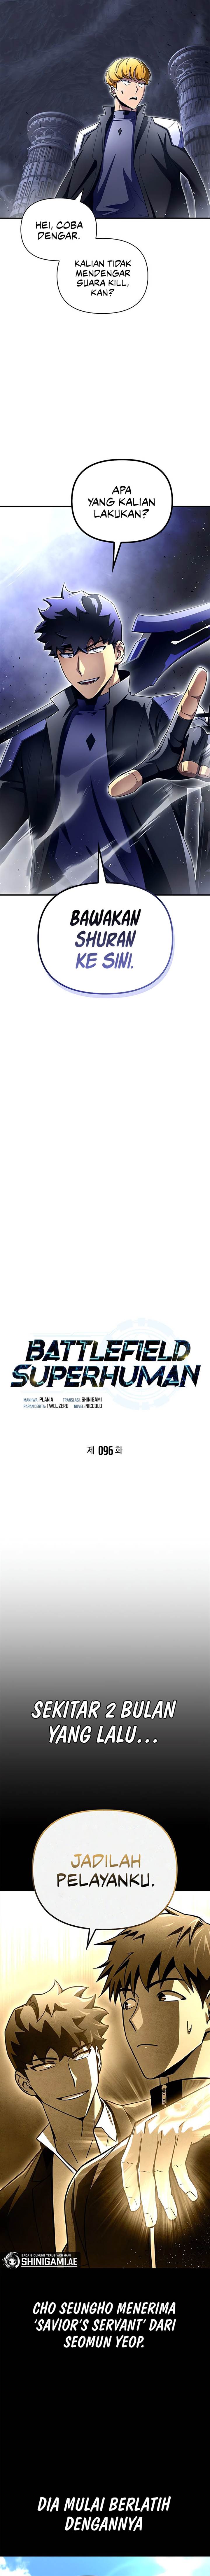 Superhuman Battlefield Chapter 96